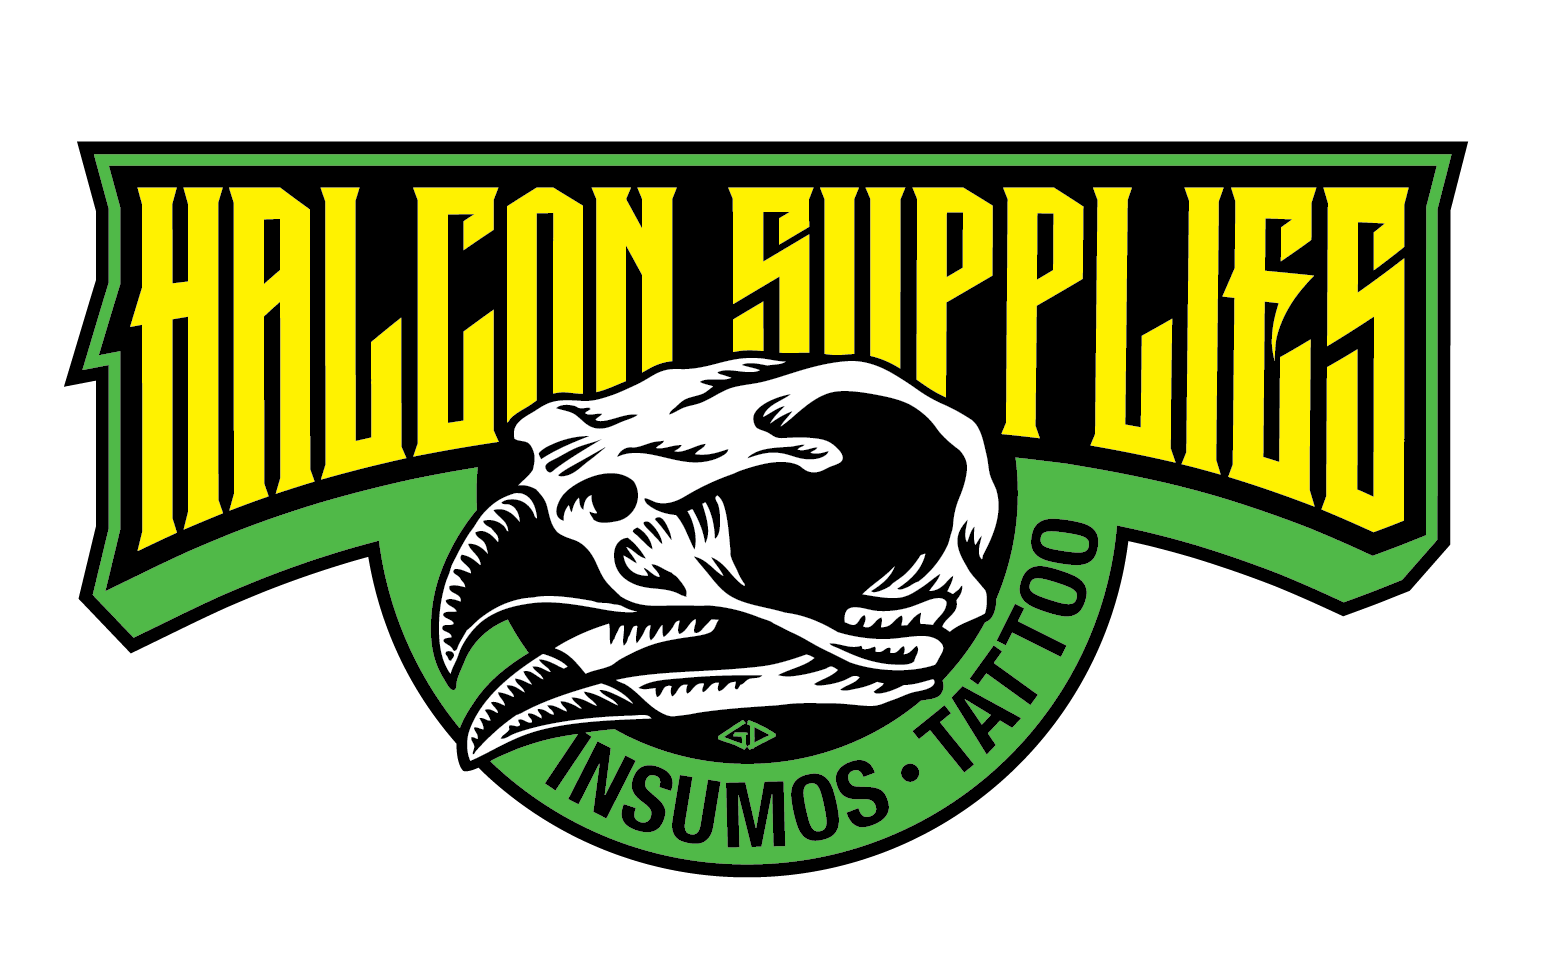 Halcon Supplies